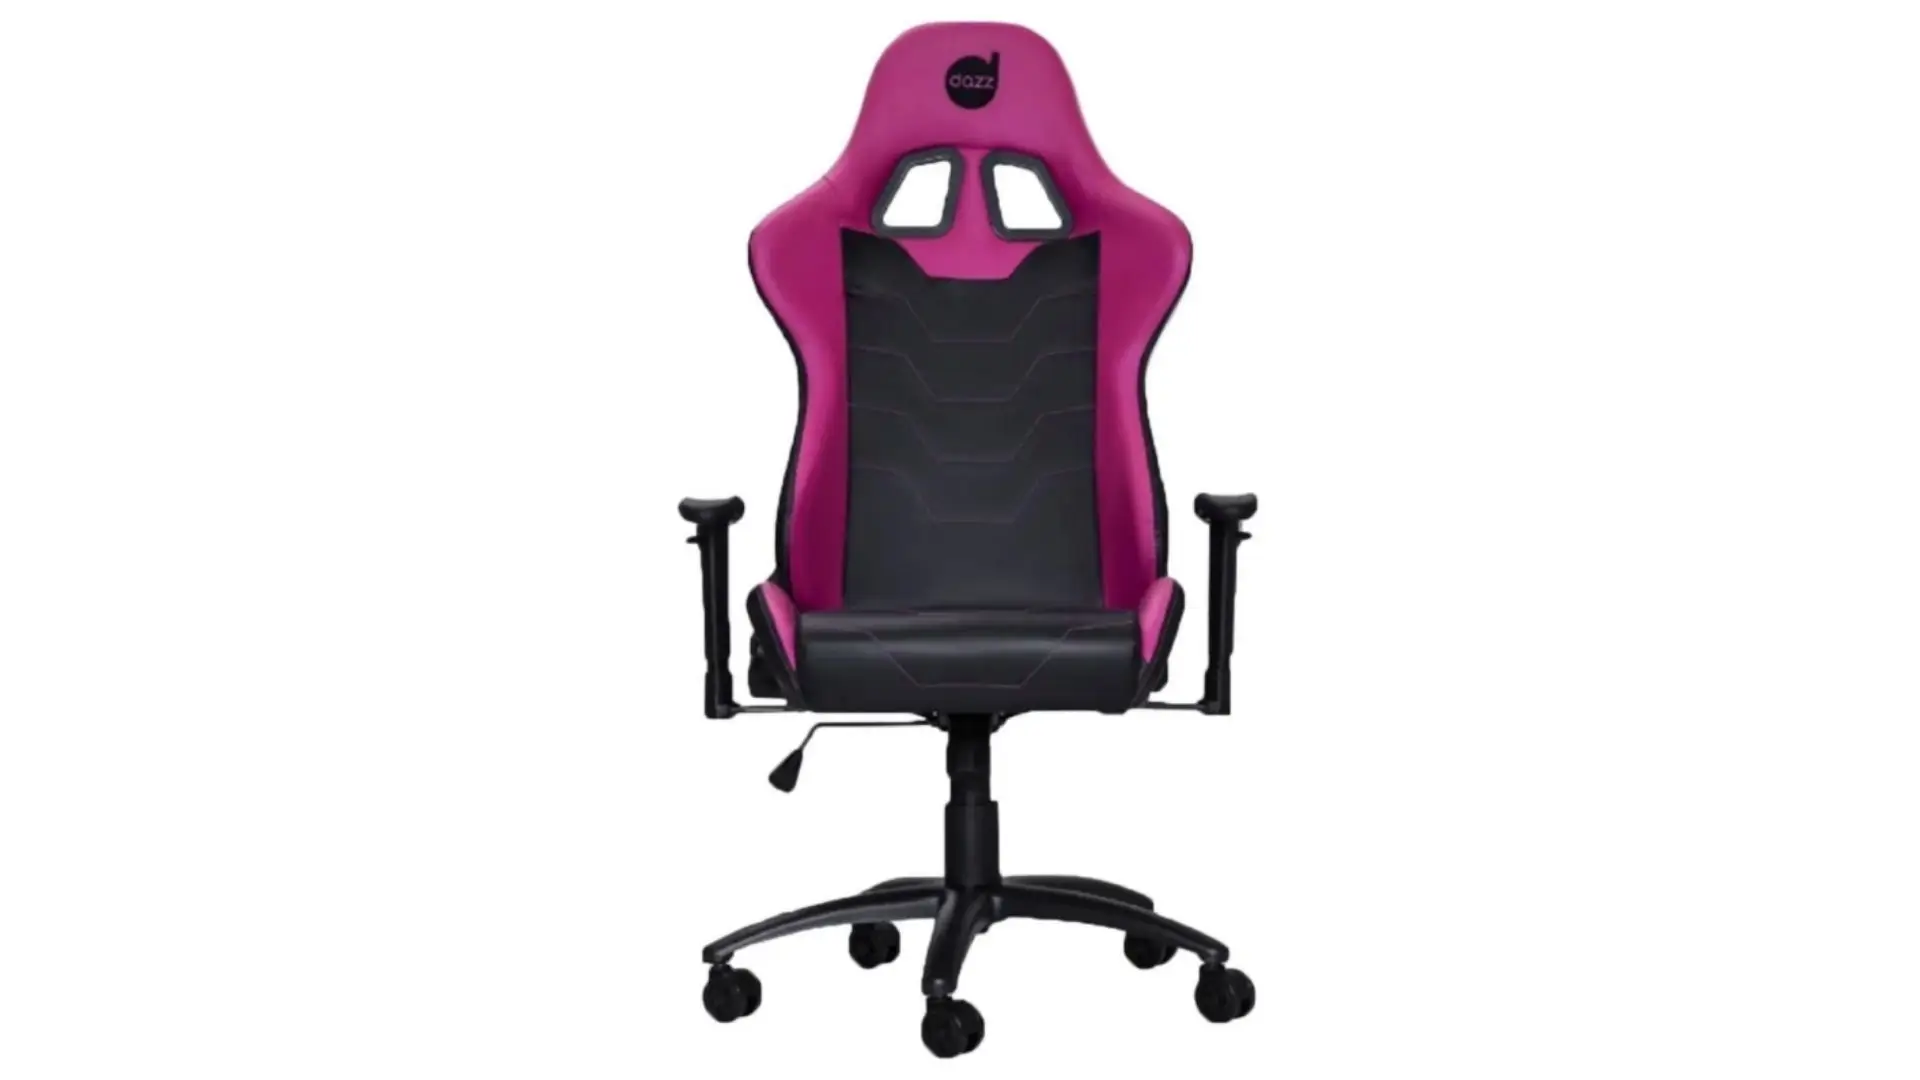 Foto: (Divulgação/Dazz)Cadeira gamer rosa escura e preta Dazz Série M